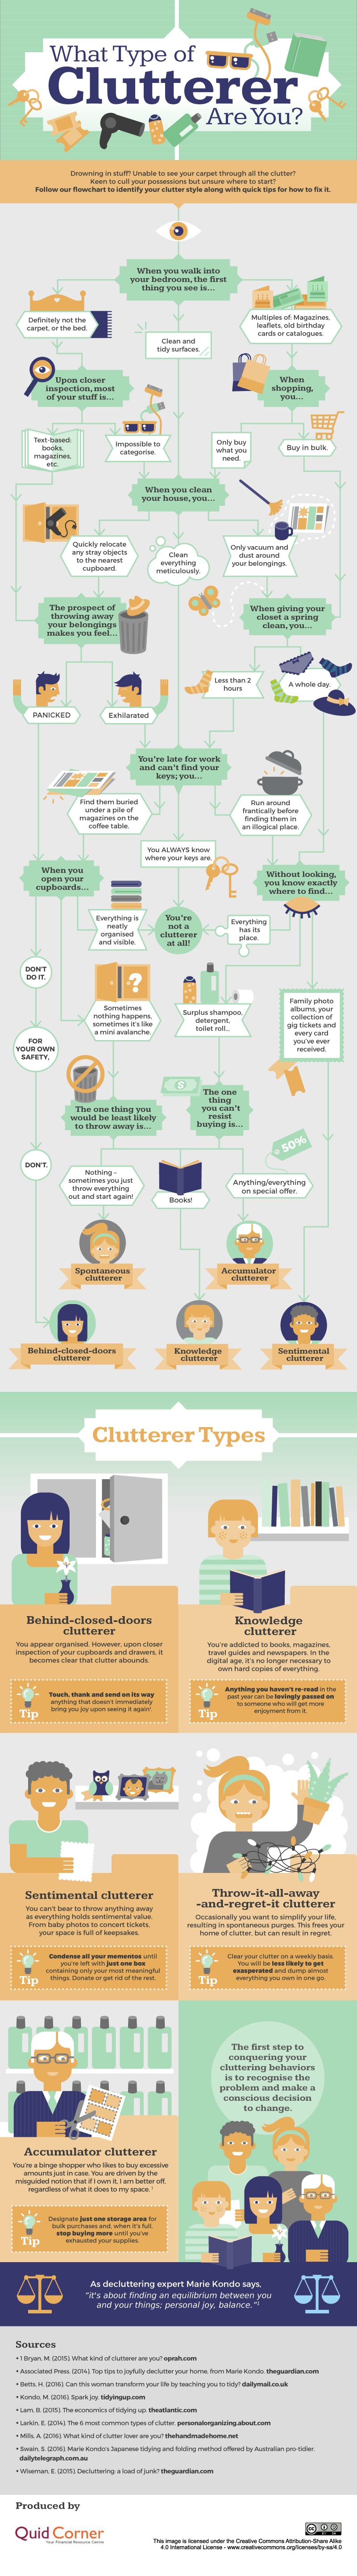 clutterer-type-infographic.jpg